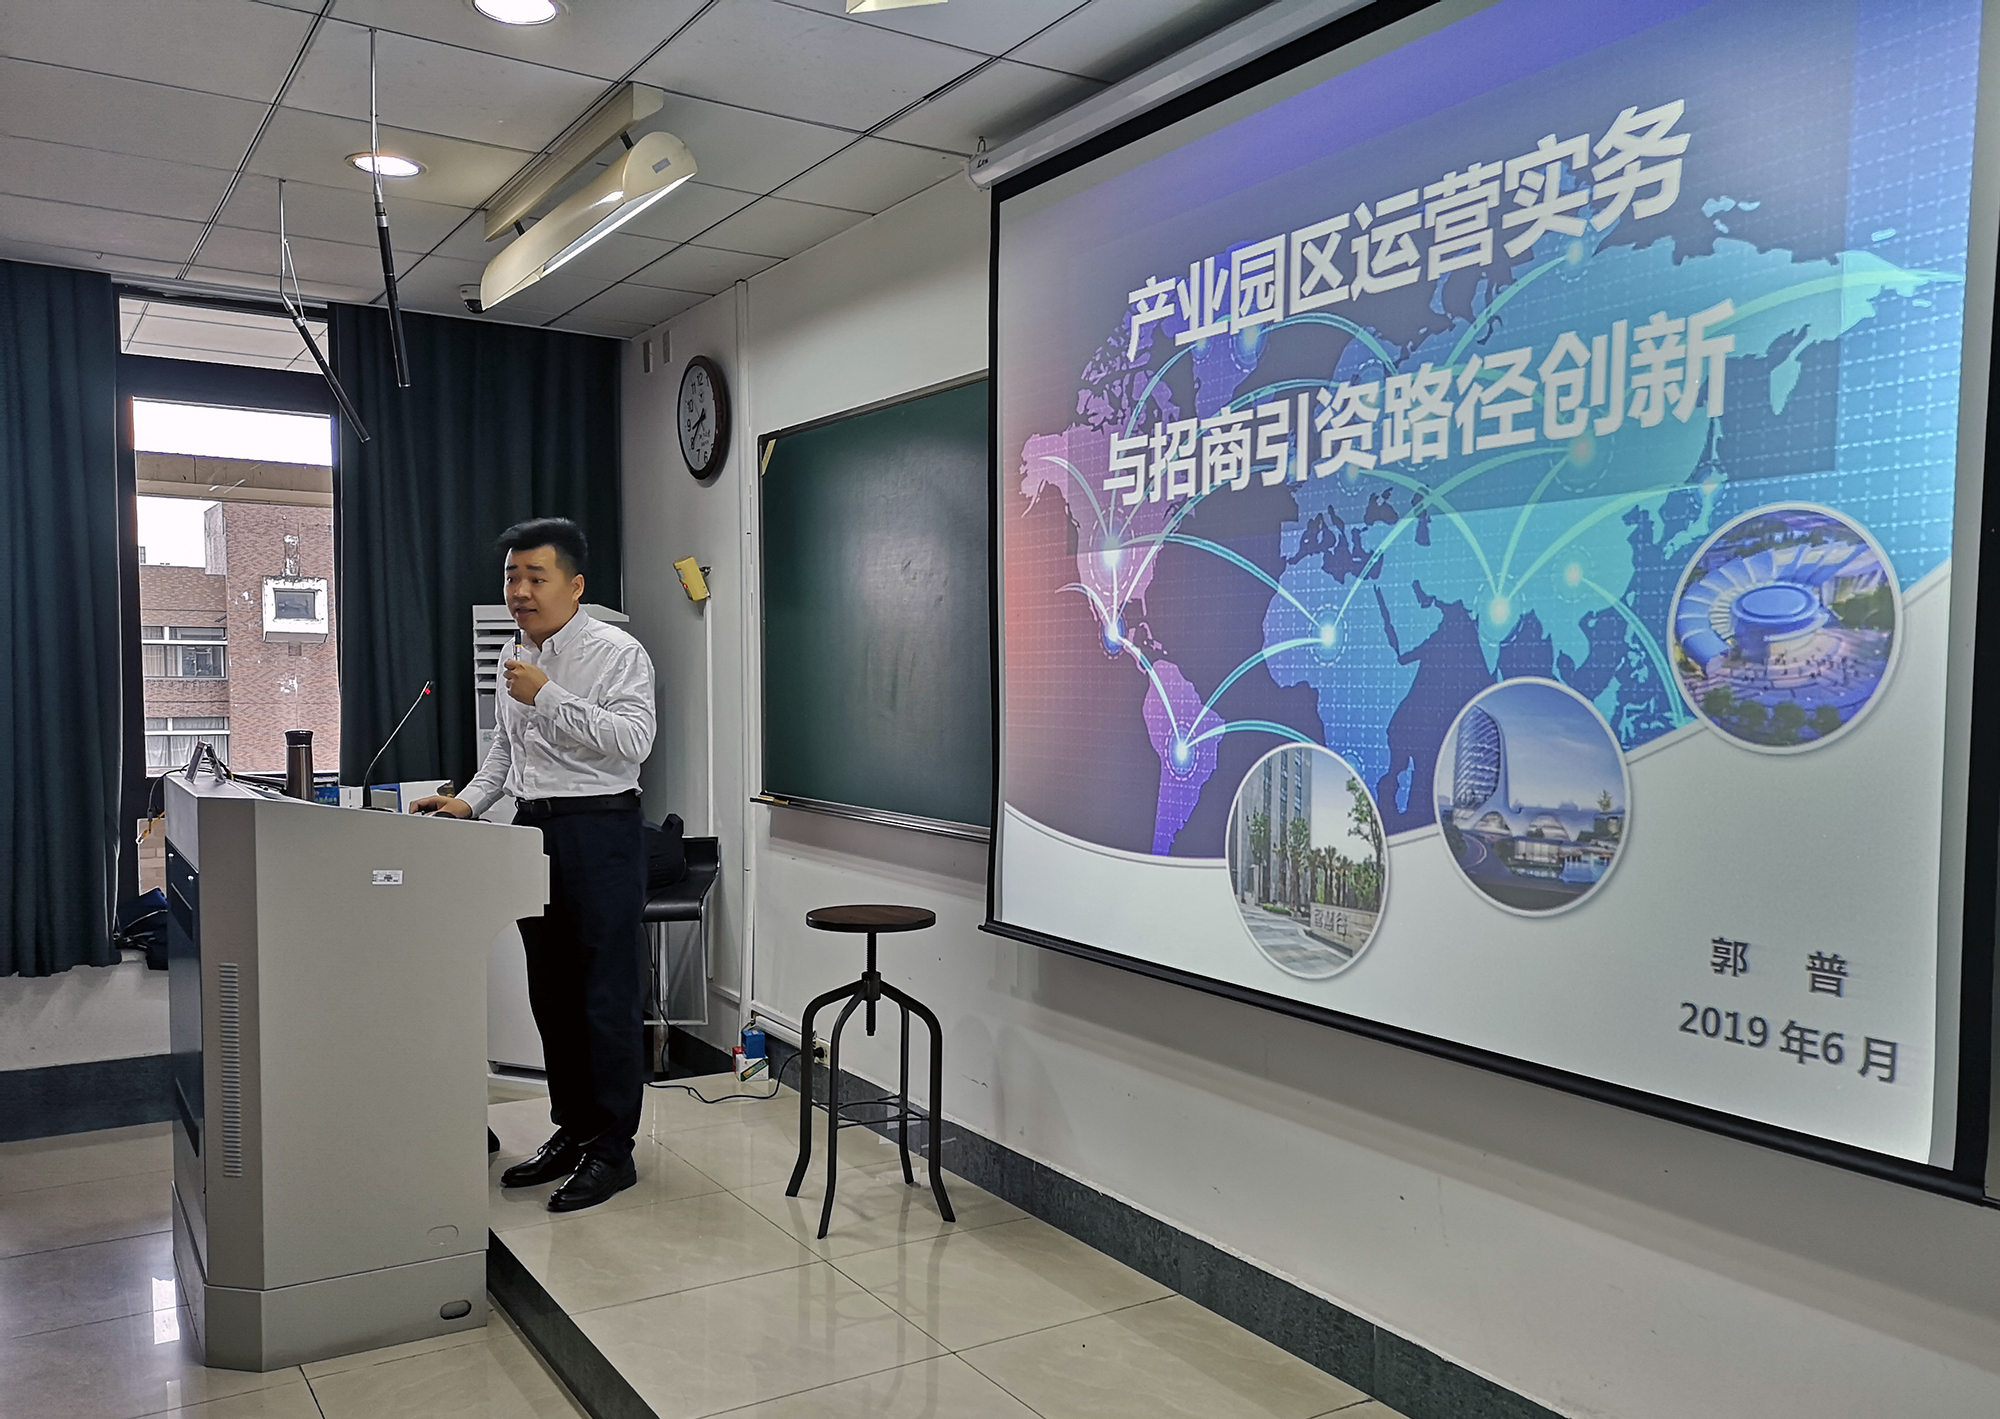 以飞地模式为主线，郭普受邀在浙江大学为政府体系领导授课